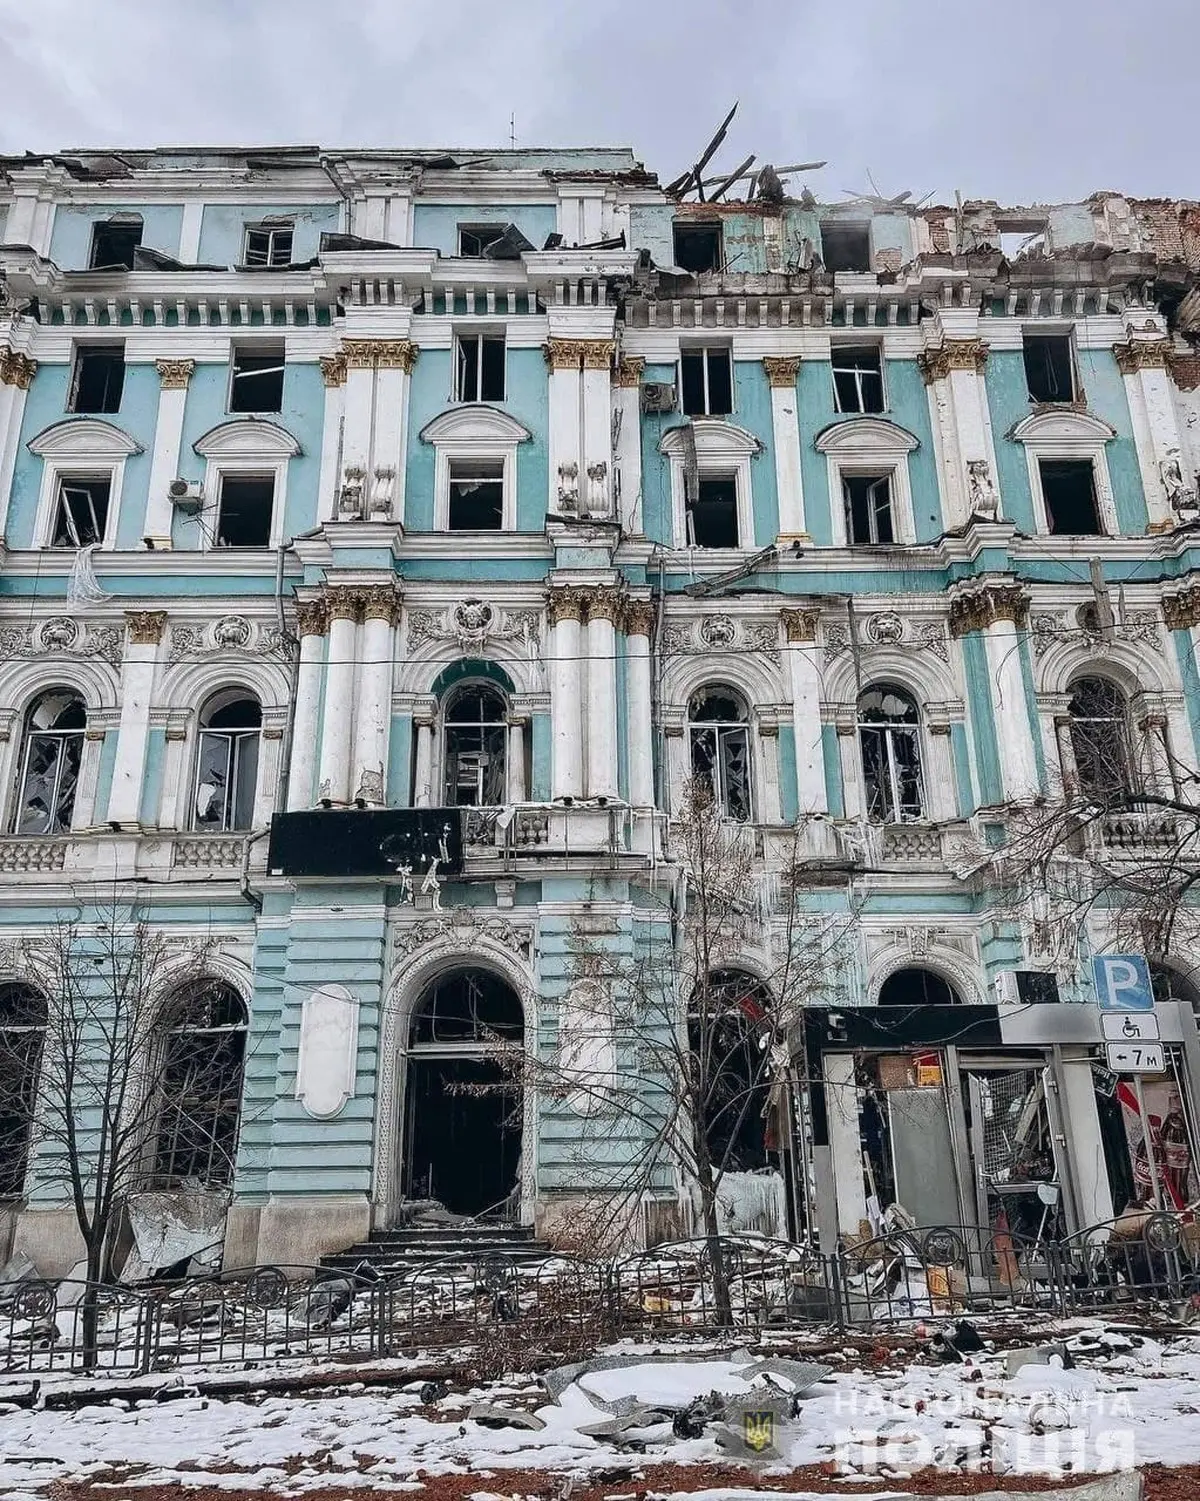  یک ساختمان تاریخی در خارکف که در گلوله باران شبانه آسیب دیده است + عکس 